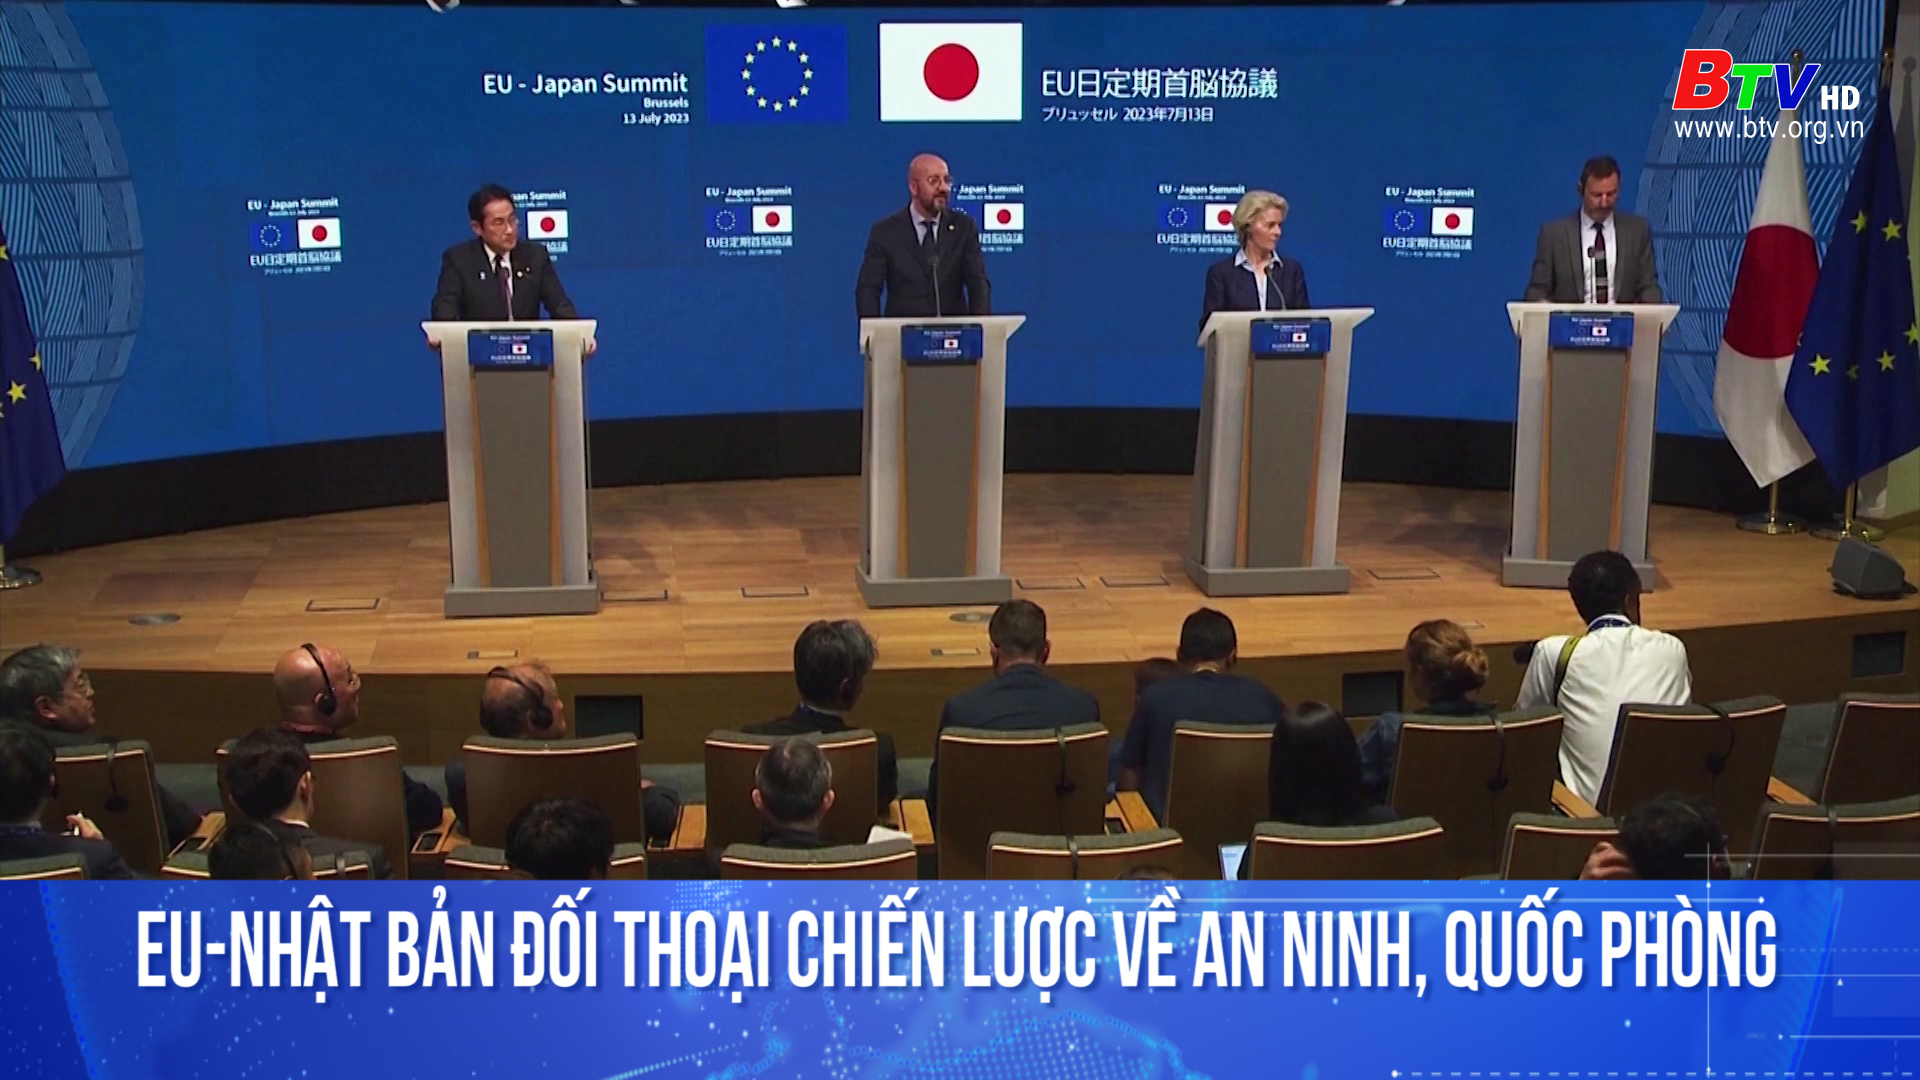 EU-Nhật Bản đối thoại chiến lược về an ninh, quốc phòng